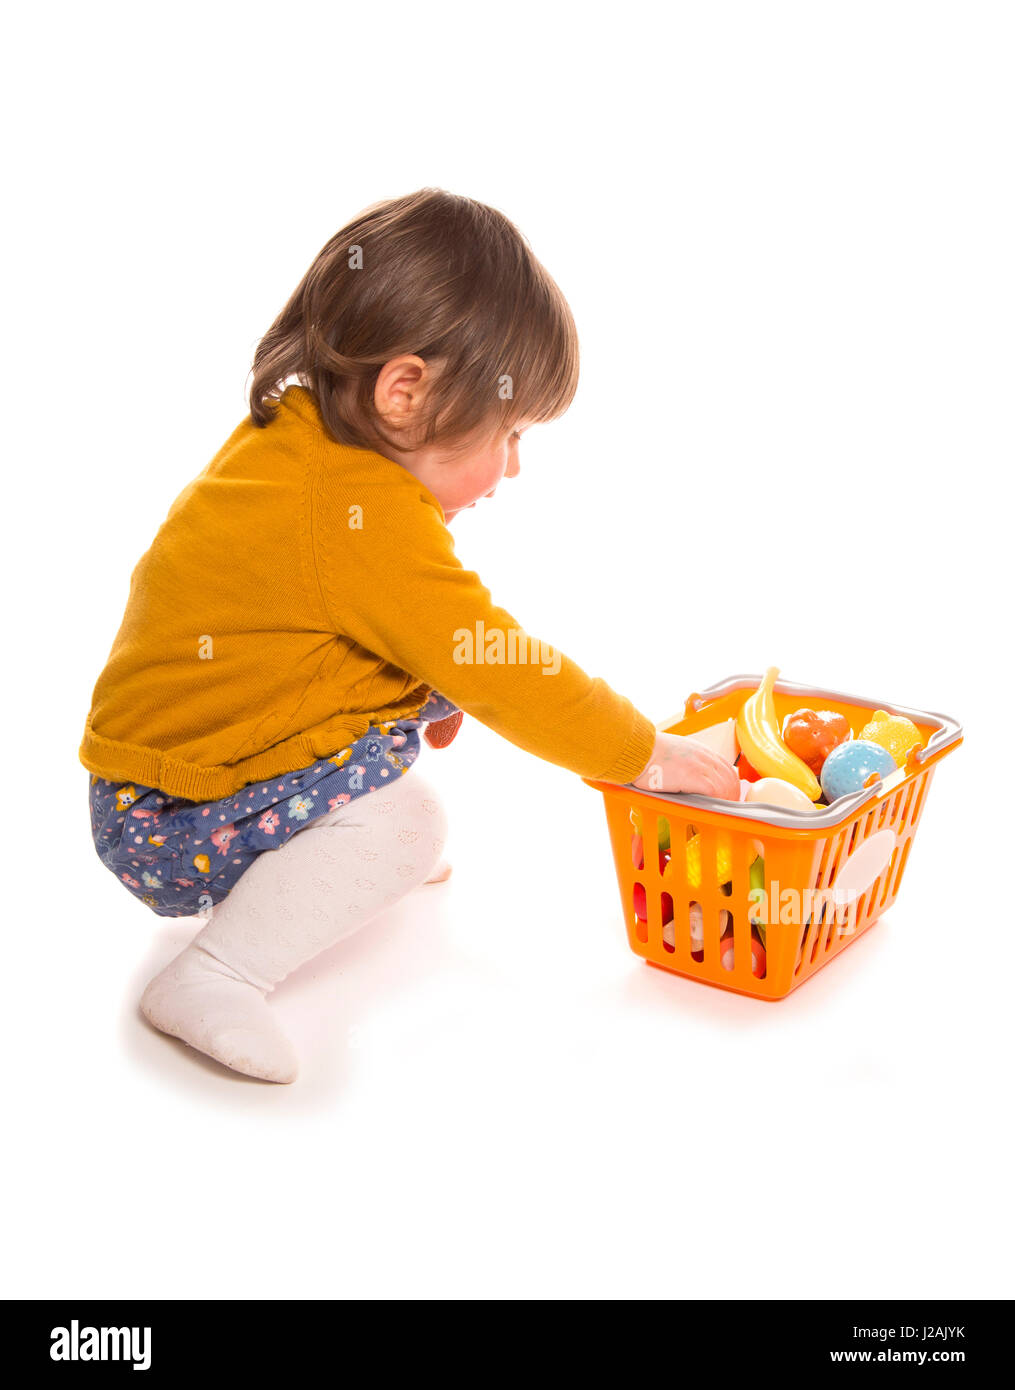 Enfant jouant avec découpe d'aliments en plastique Banque D'Images